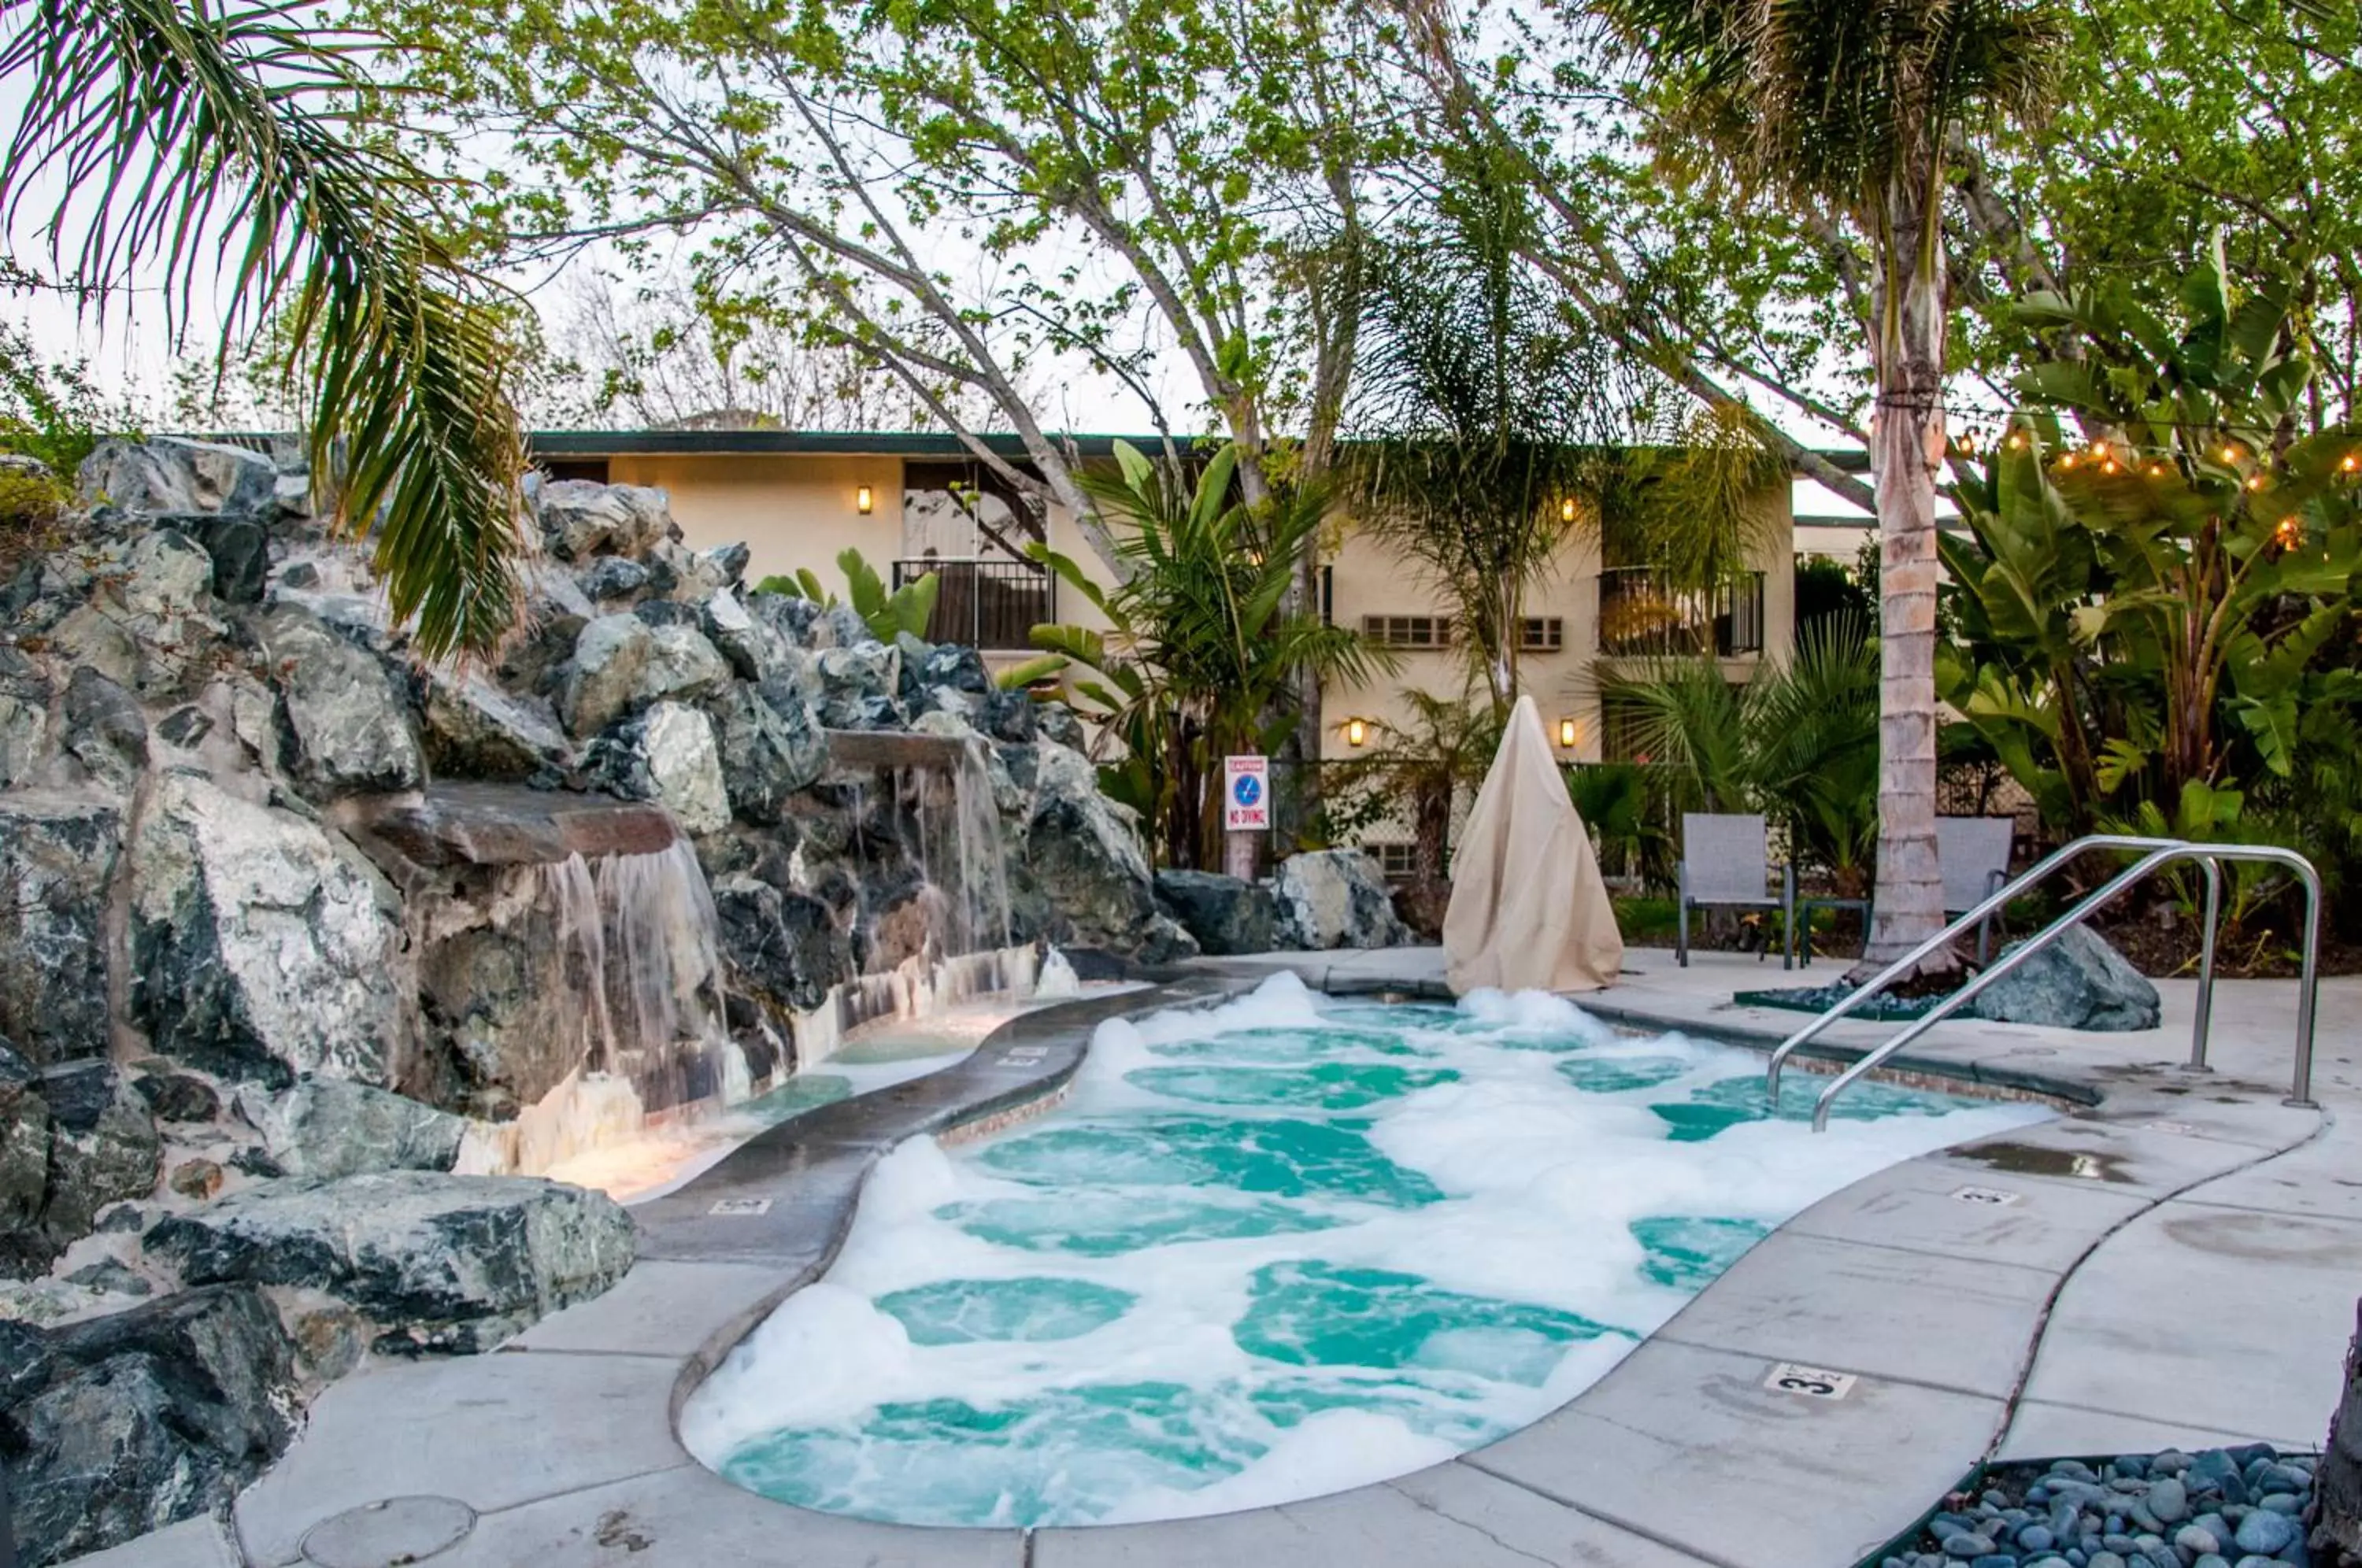 Swimming pool in Hotel Calle Joaquin - San Luis Obispo